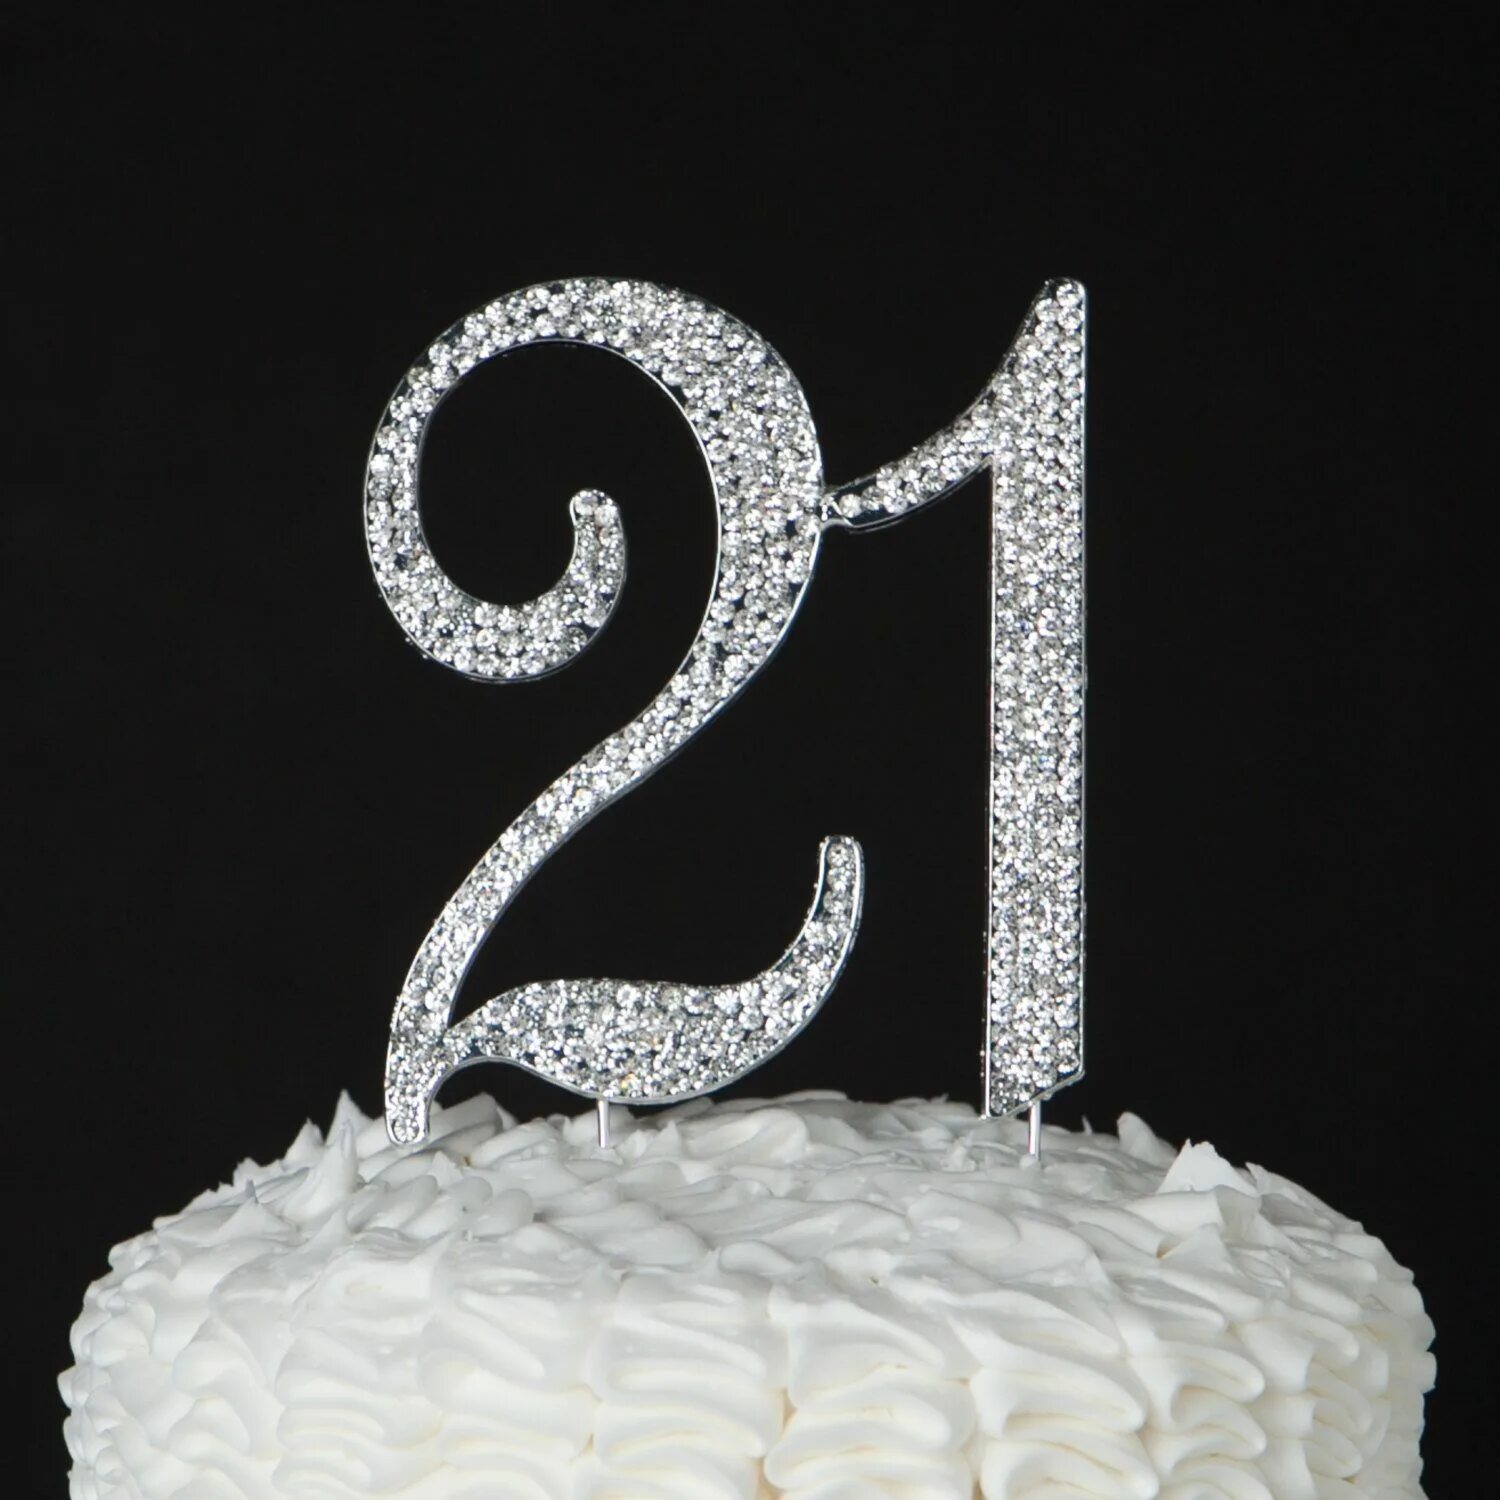 Тортик на 21 год. Торт на день рождения 21. Торт цифра. Торт цифра 21. 17 апреля 21 год